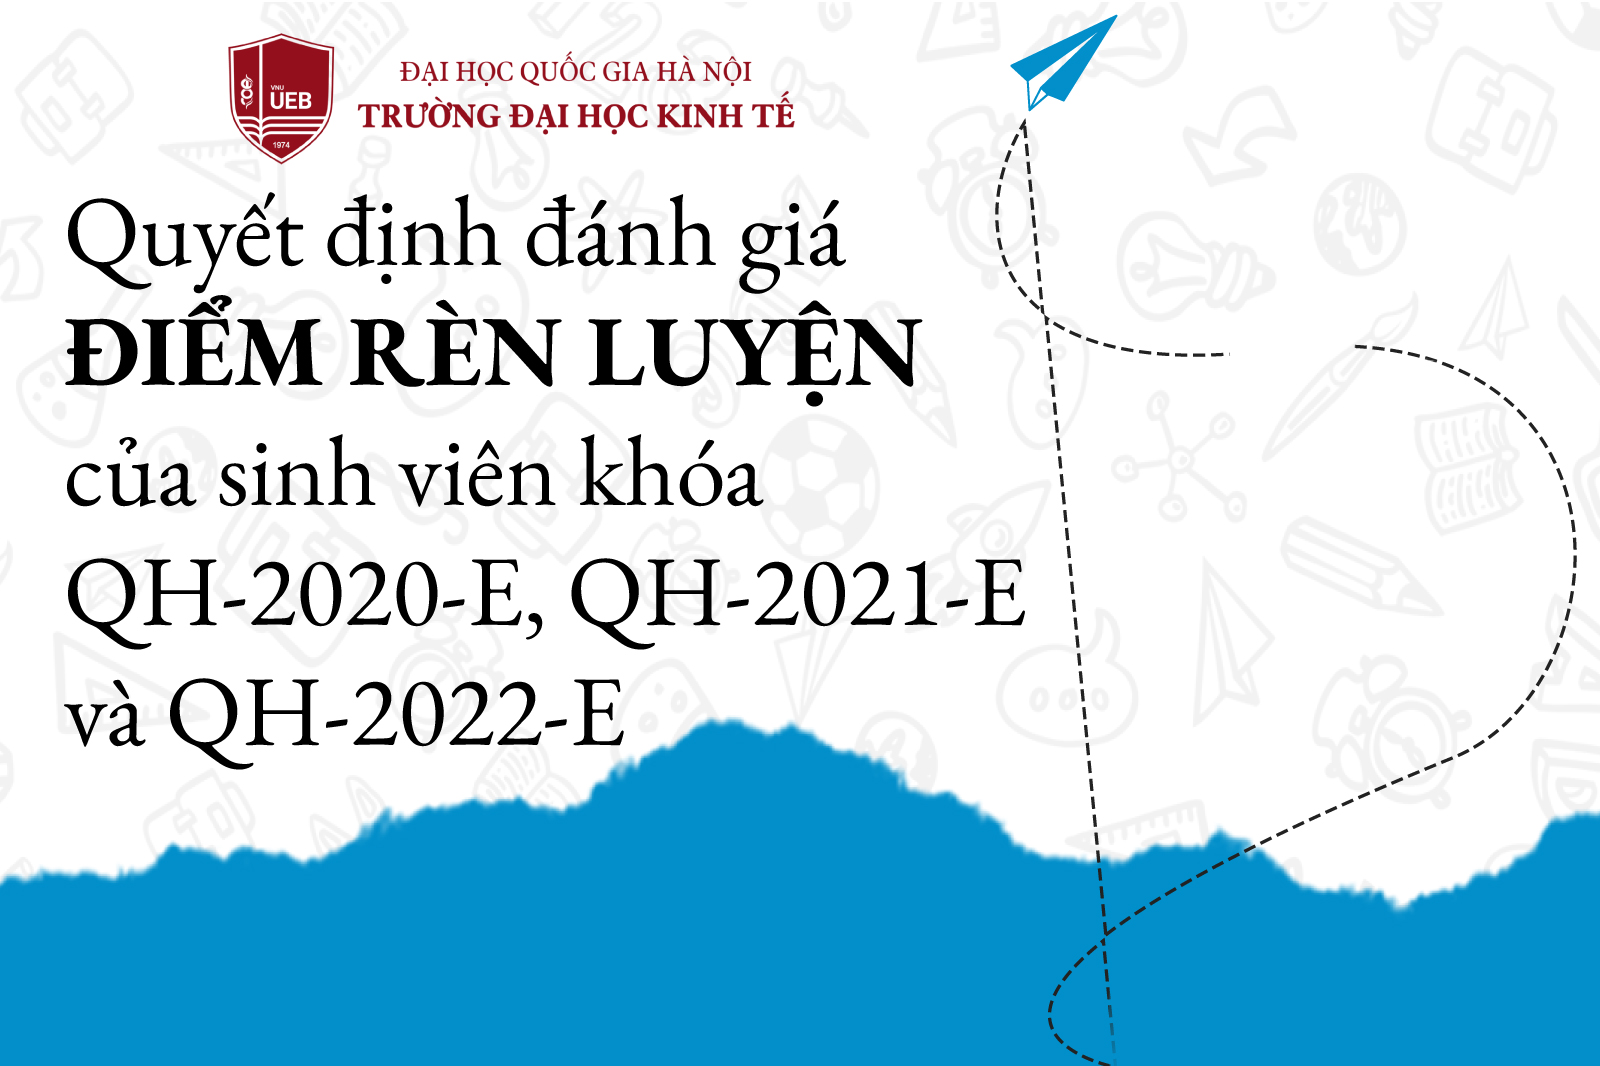 Quyết định đánh giá điểm rèn luyện sinh viên khóa QH-2020-E, QH-2021-E và QH-2022-E học kỳ I năm học 2022-2023